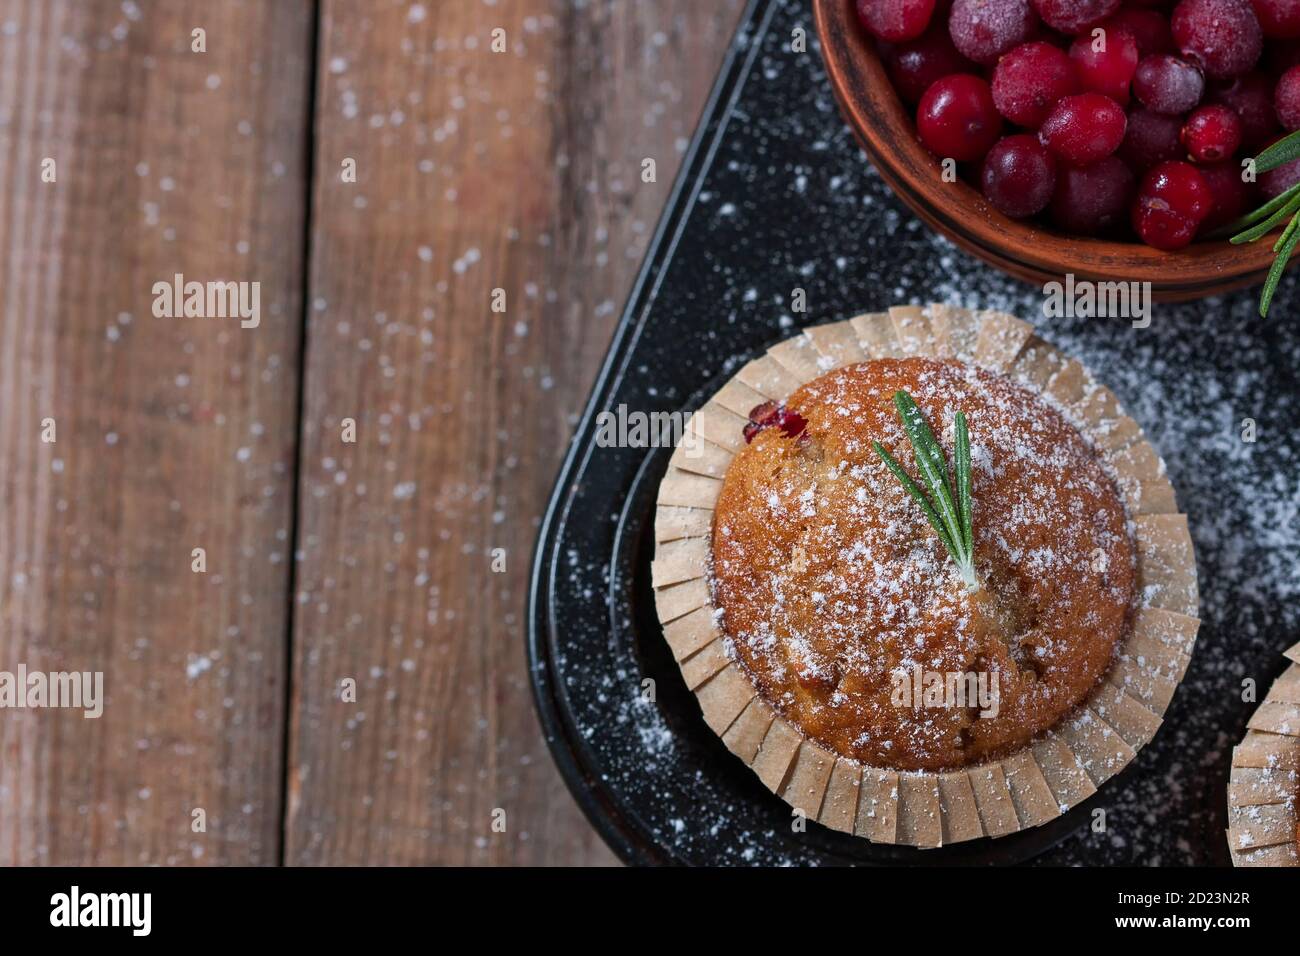 Muffins aux canneberges maison frais sous forme de pâtisserie sur une table en bois avec décoration de Noël. Muffins dans un emballage en papier recyclable écologique. Banque D'Images